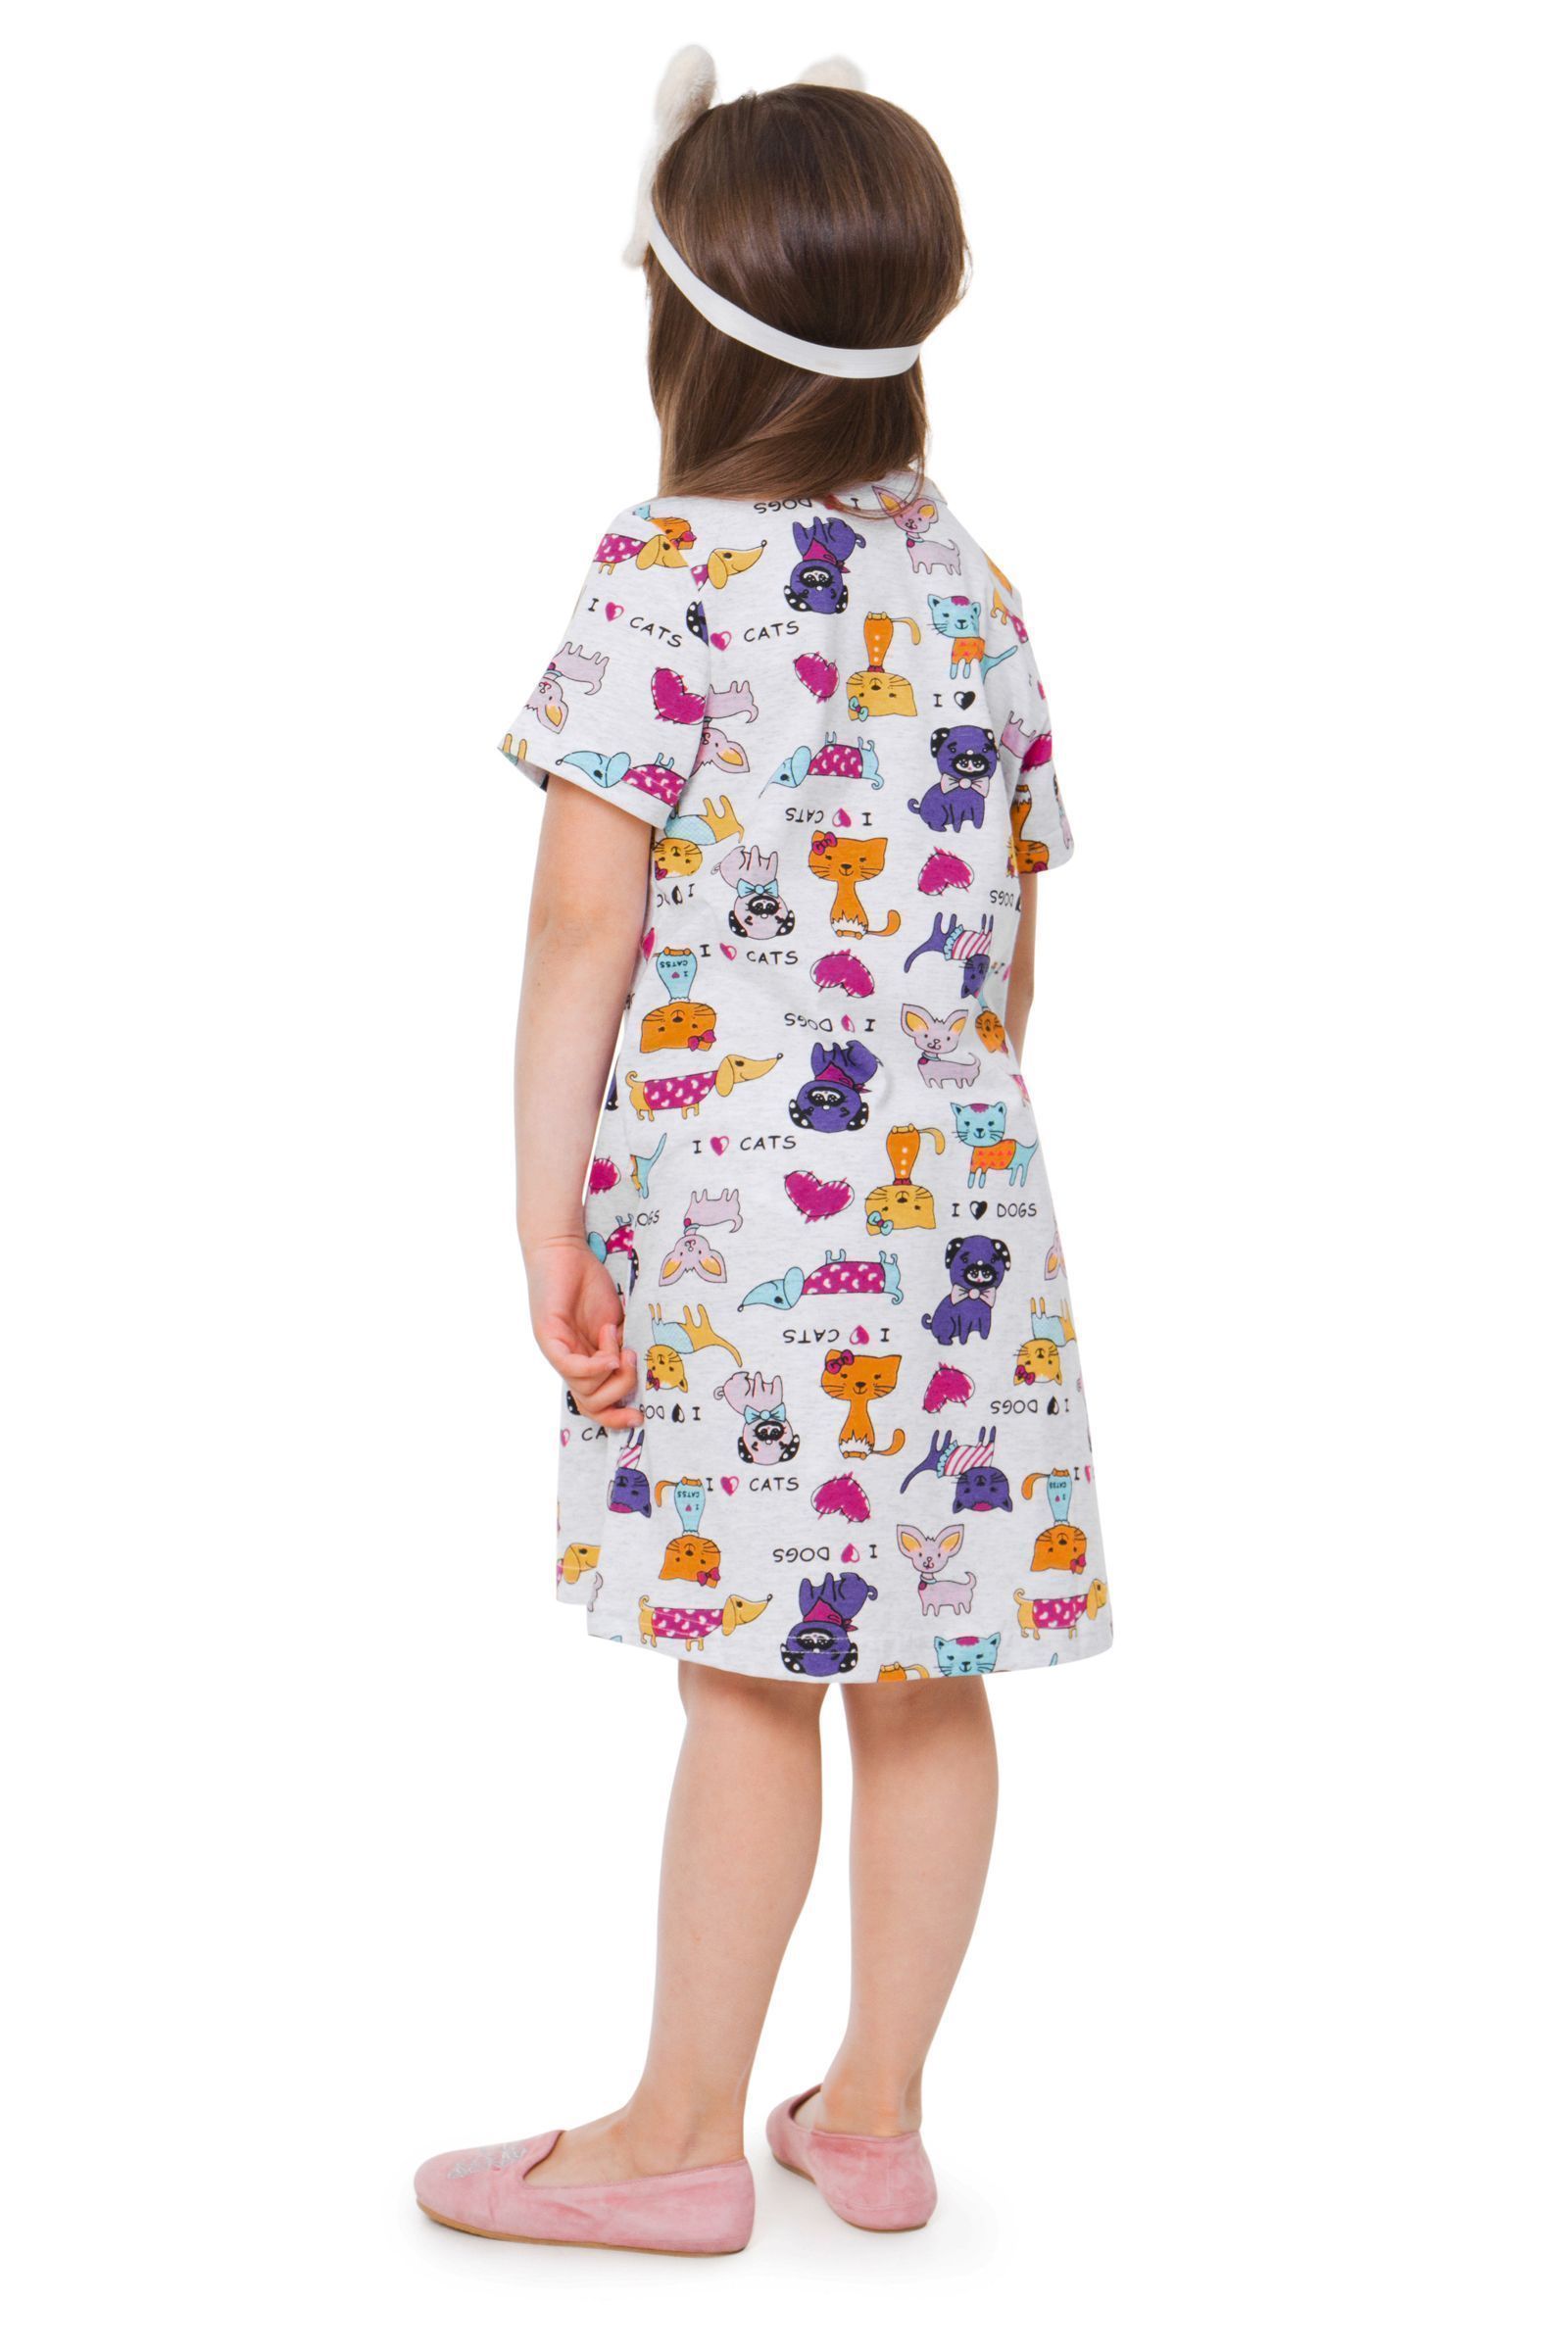 Сорочка-СР02-2892 оптом от производителя детской одежды 'Алёна'